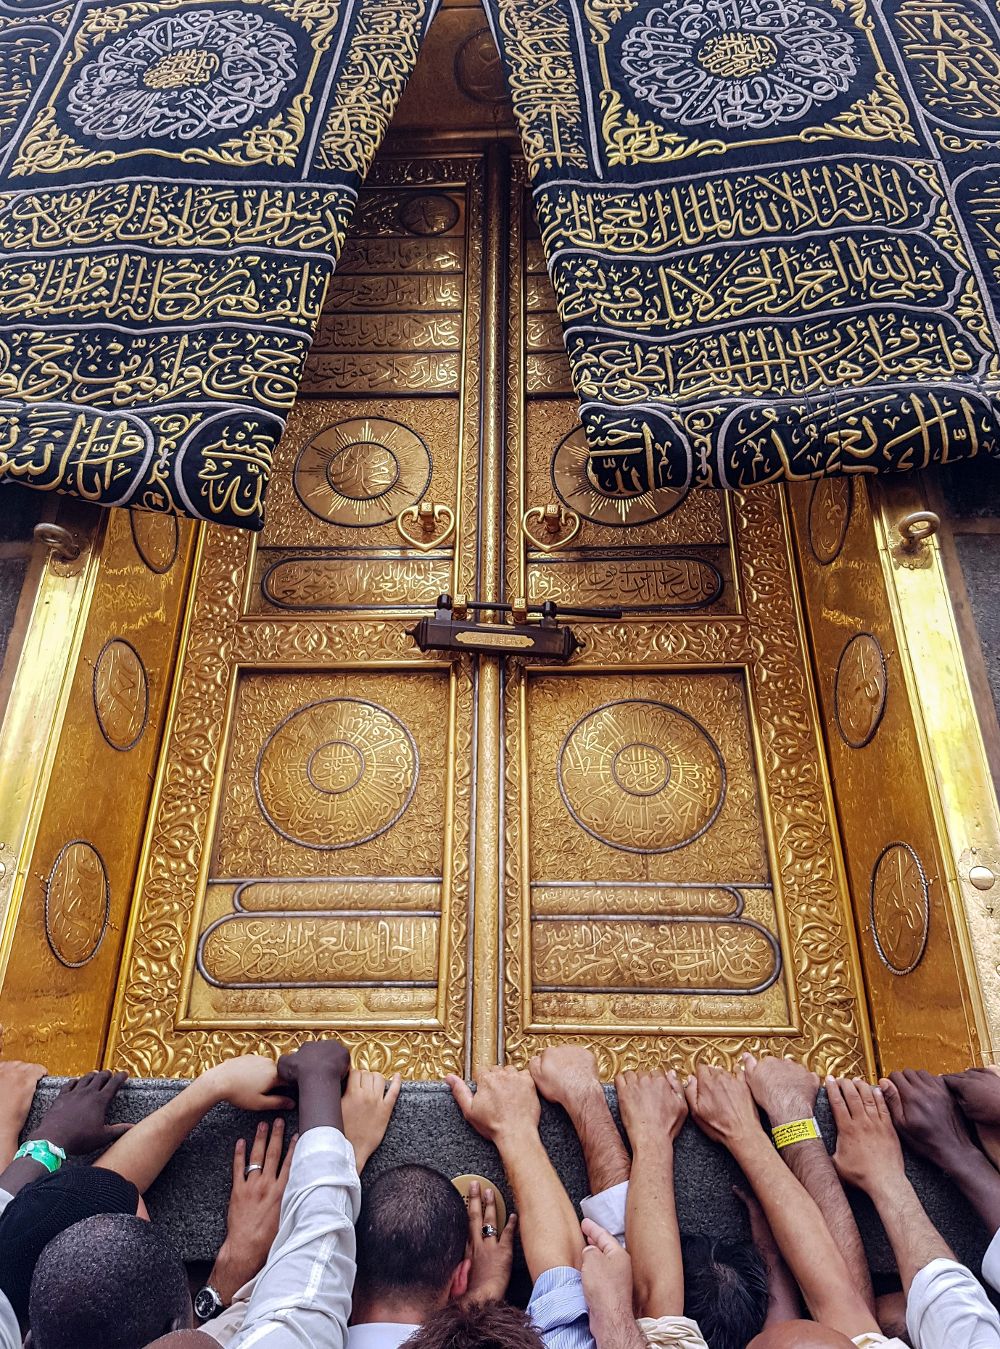 Miles de fieles tocan la puerta dorada conocida como "Kaaba", en la que se encuentra la piedra negra que los musulmanes consideran un pedazo del paraíso, en la mezquita Masjid al-Haram en la ciudad de La Meca.